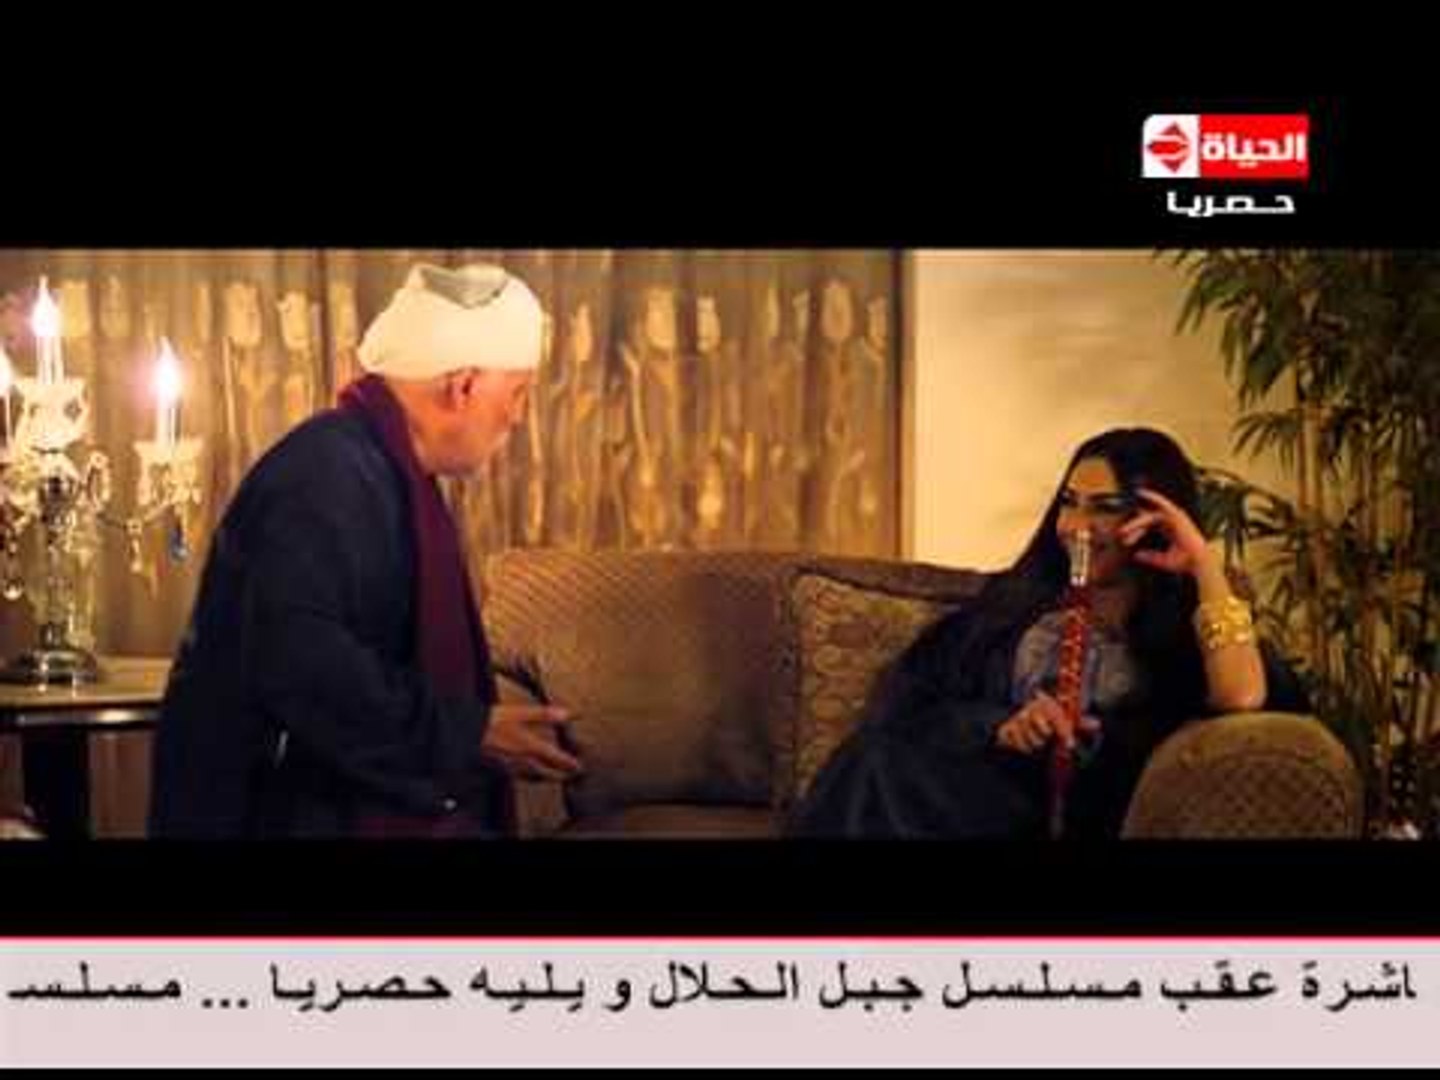 مسلسل جبل الحلال - الحلقة ( 2 ) الثانية - بطولة محمود عبد العزيز - Gbal Al  7lal Episode 02 - video Dailymotion